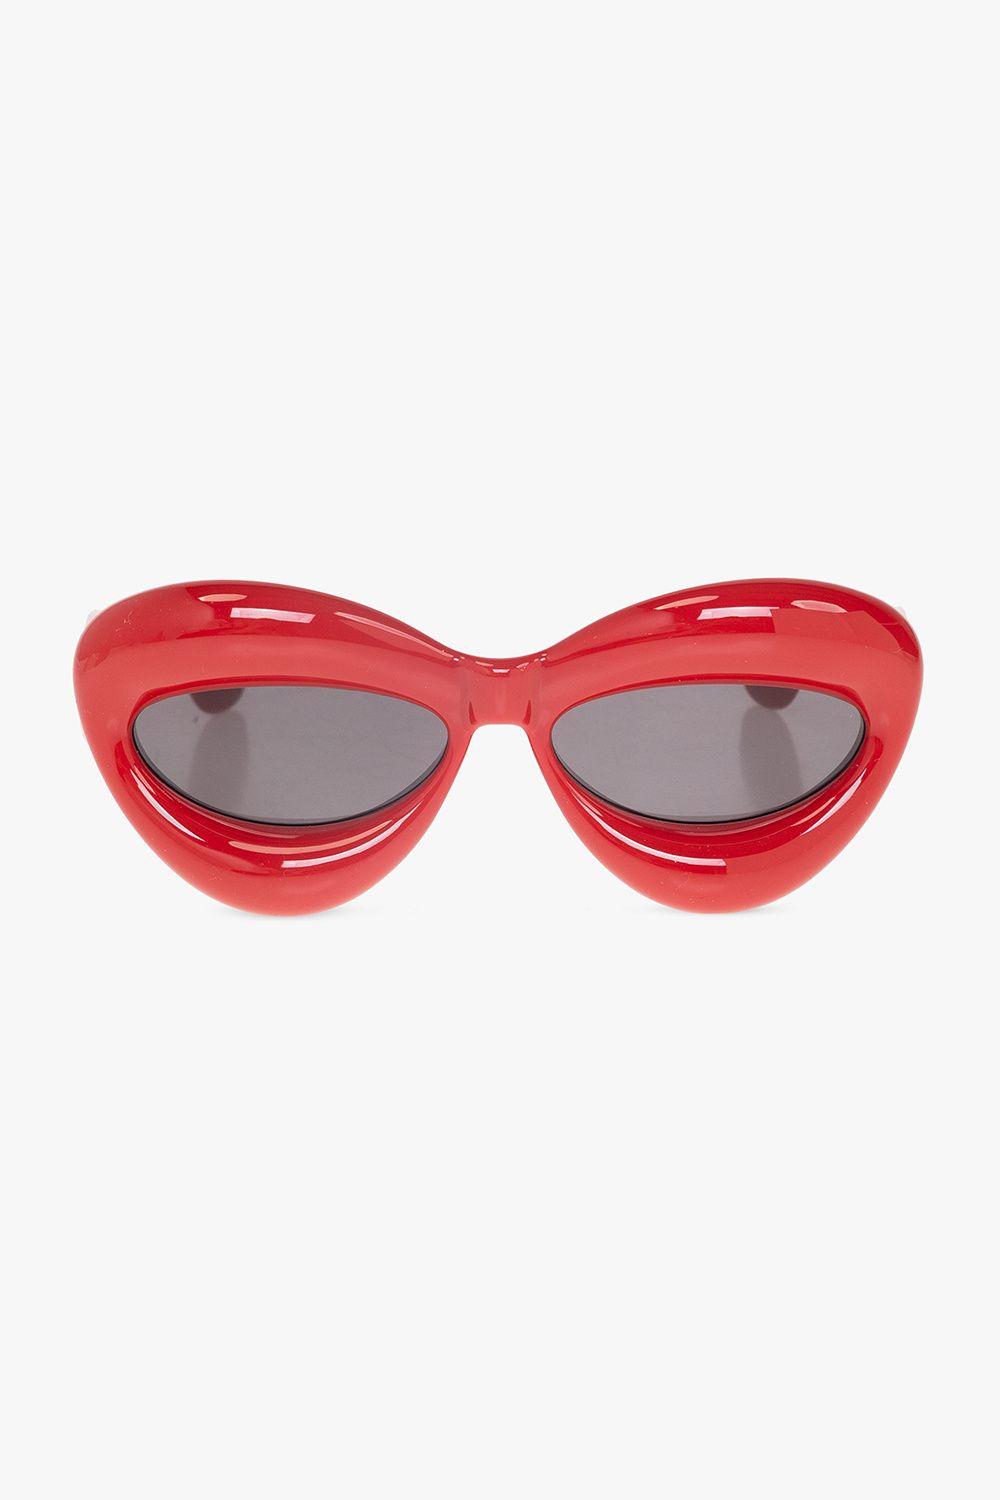 Loewe Sunglasses in Red Lyst